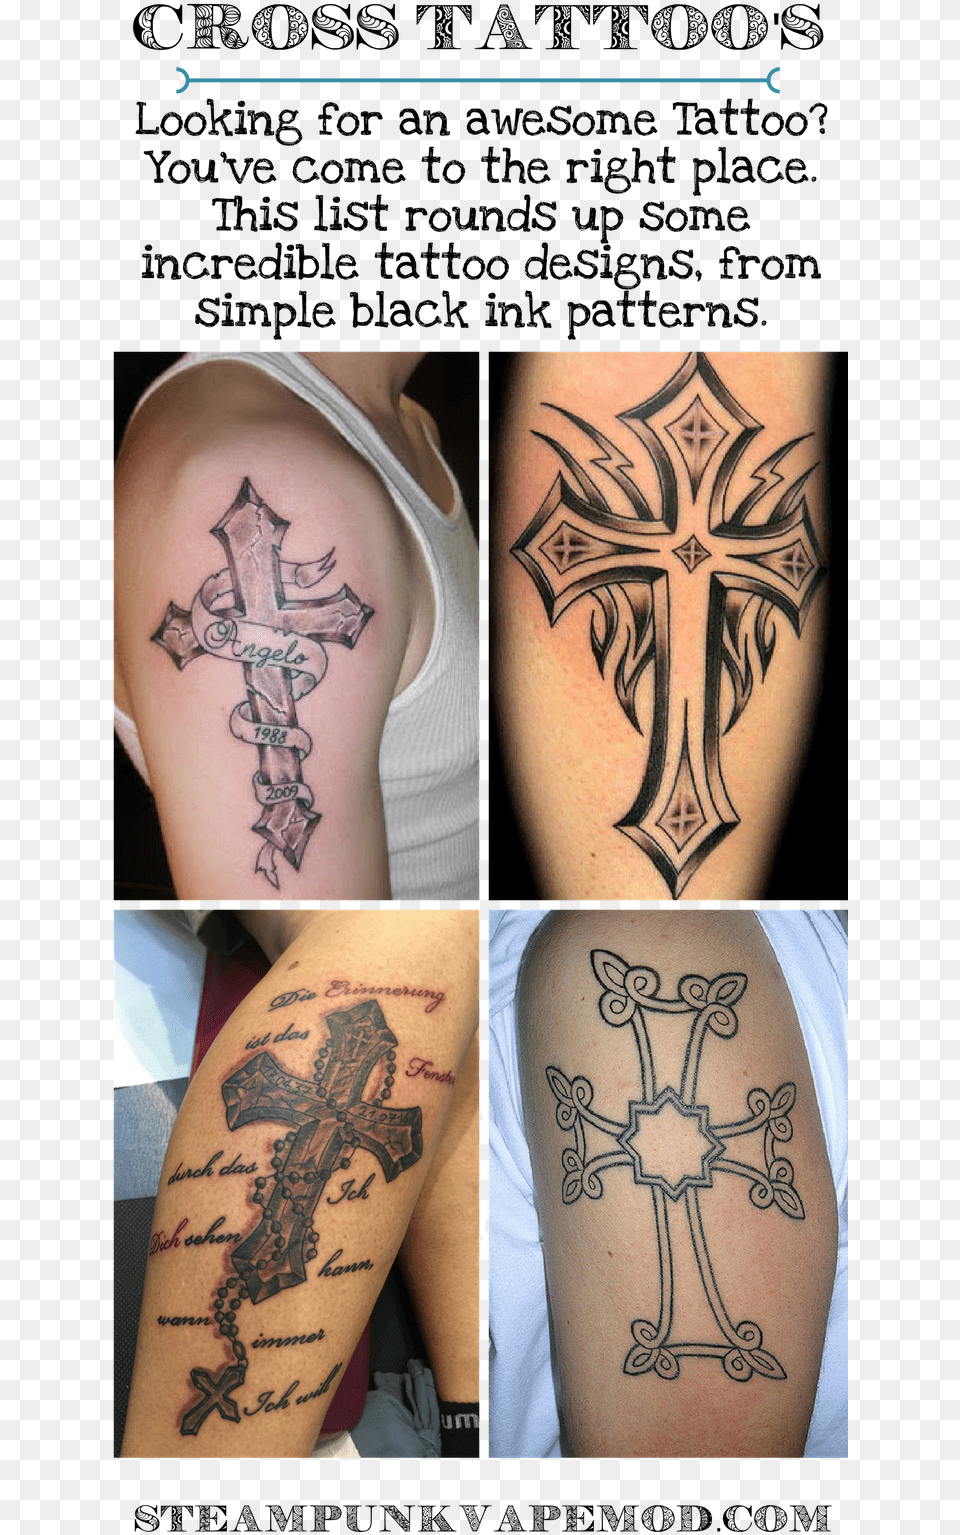 Cross Tattoos Cross Tattoos Henna Future Tattoos Tattoos Cross, Person, Skin, Tattoo Png Image